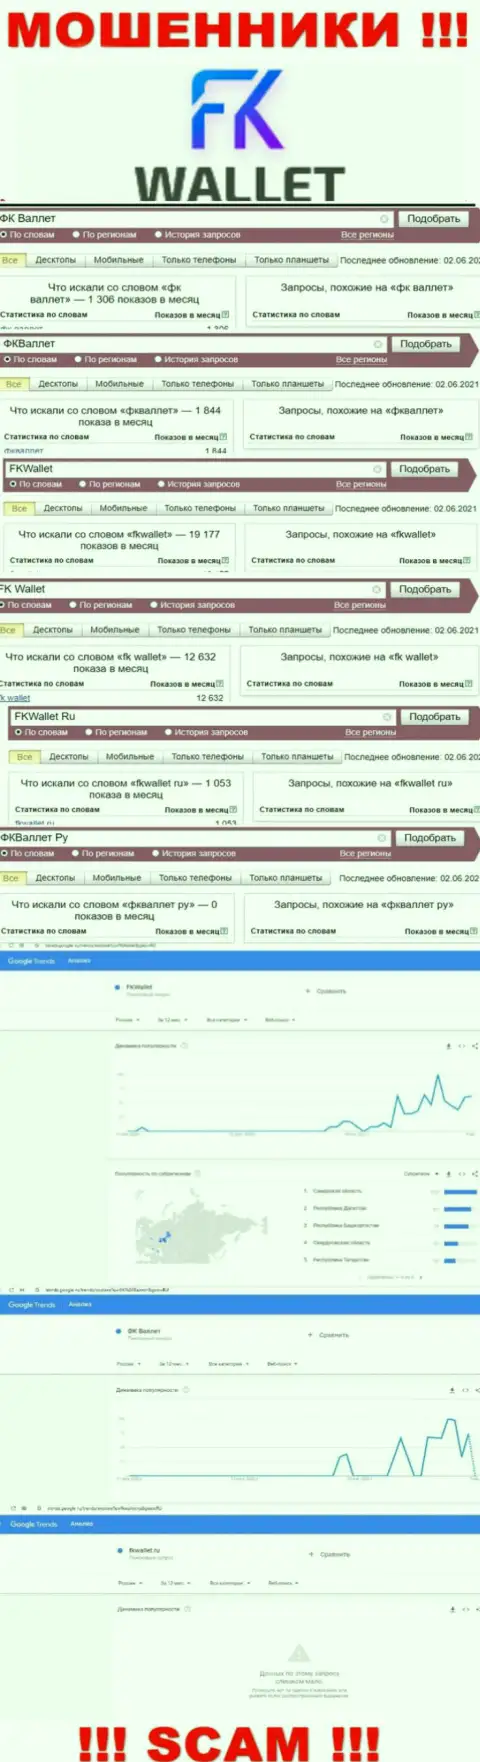 Скриншот статистических показателей онлайн-запросов по противозаконно действующей компании FKWallet